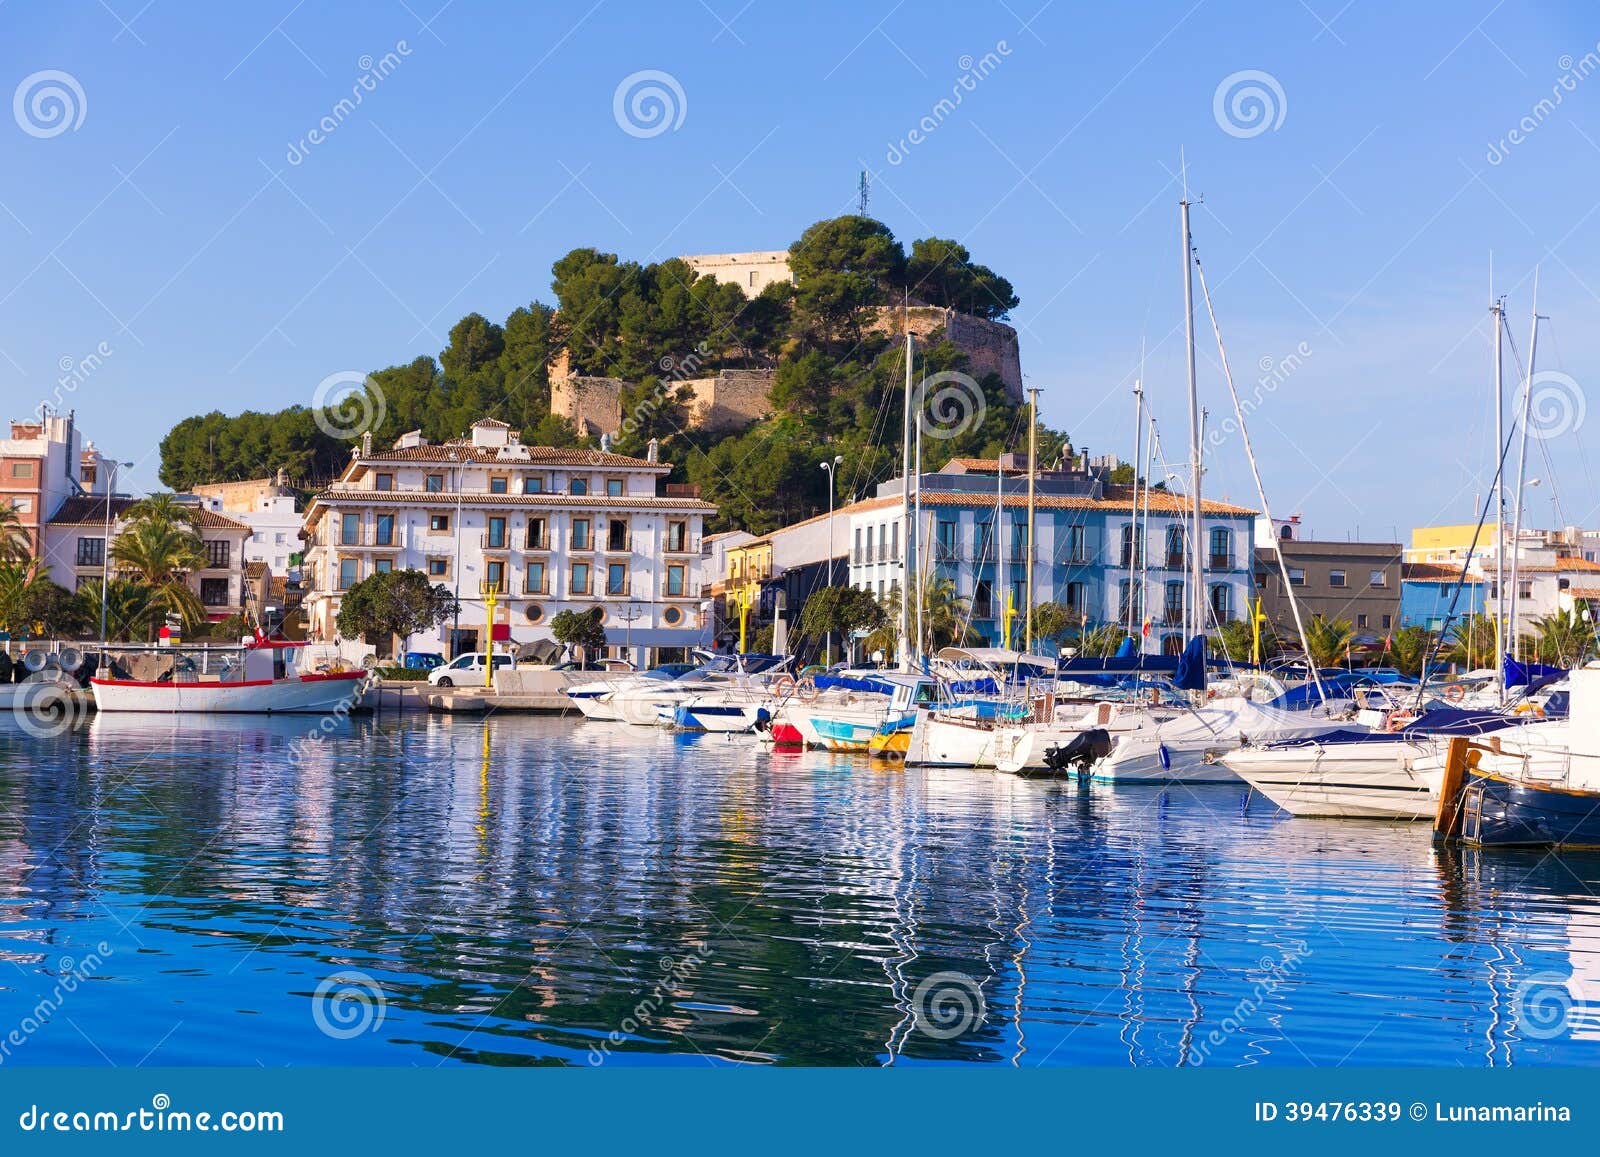 denia port with castle hill alicante province spain